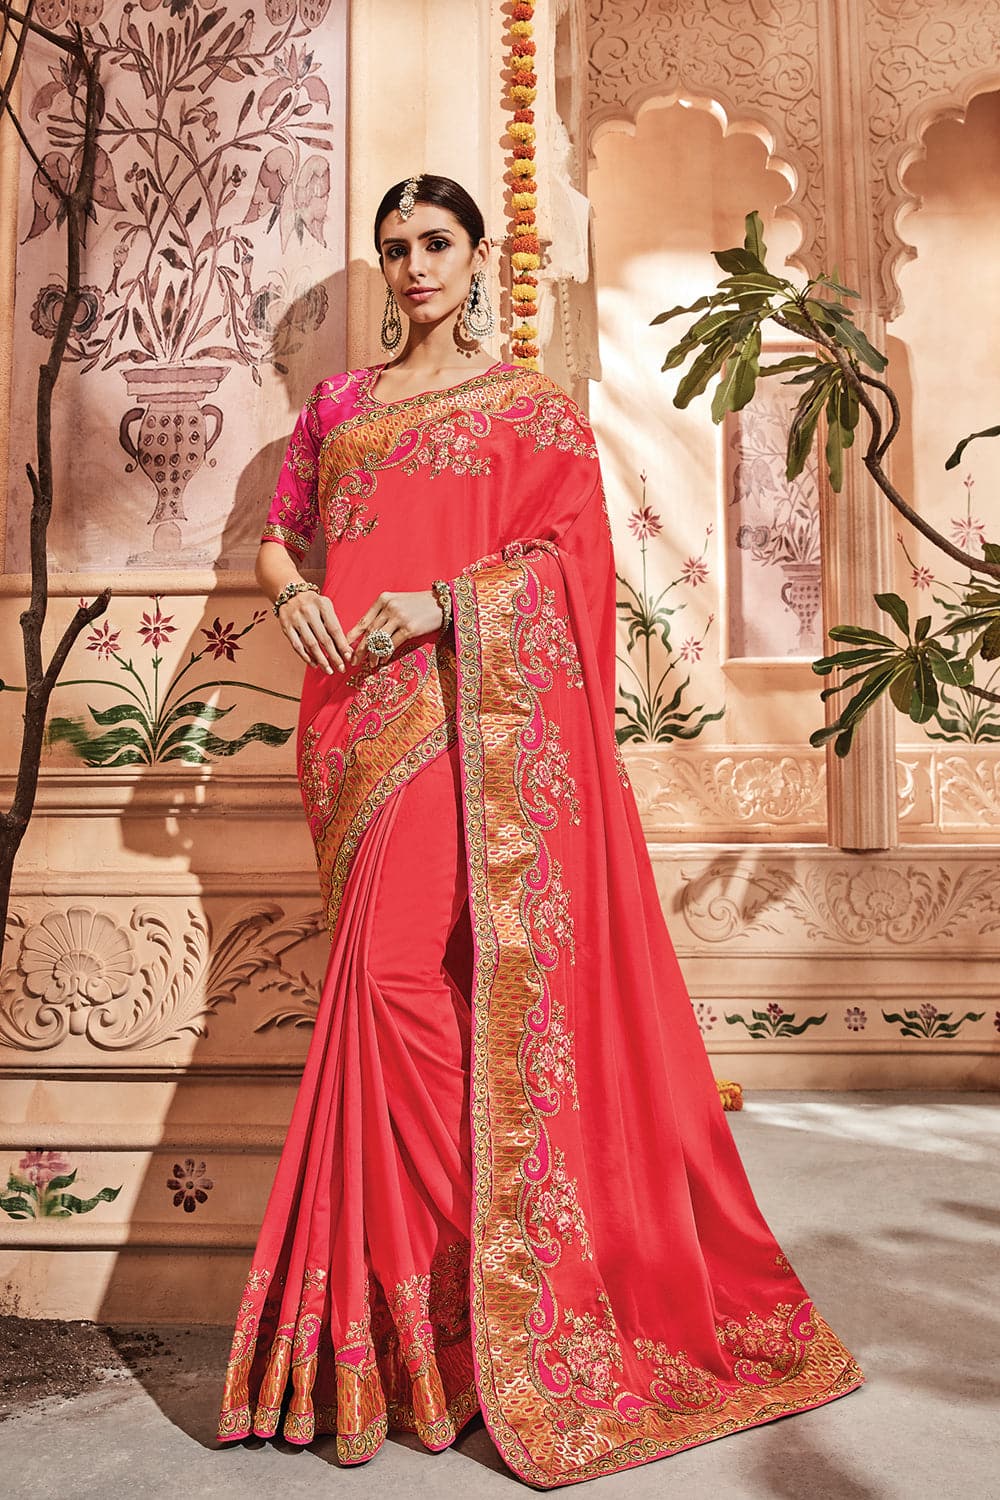 Buy Coral pink banarasi saree online at best price - Karagiri